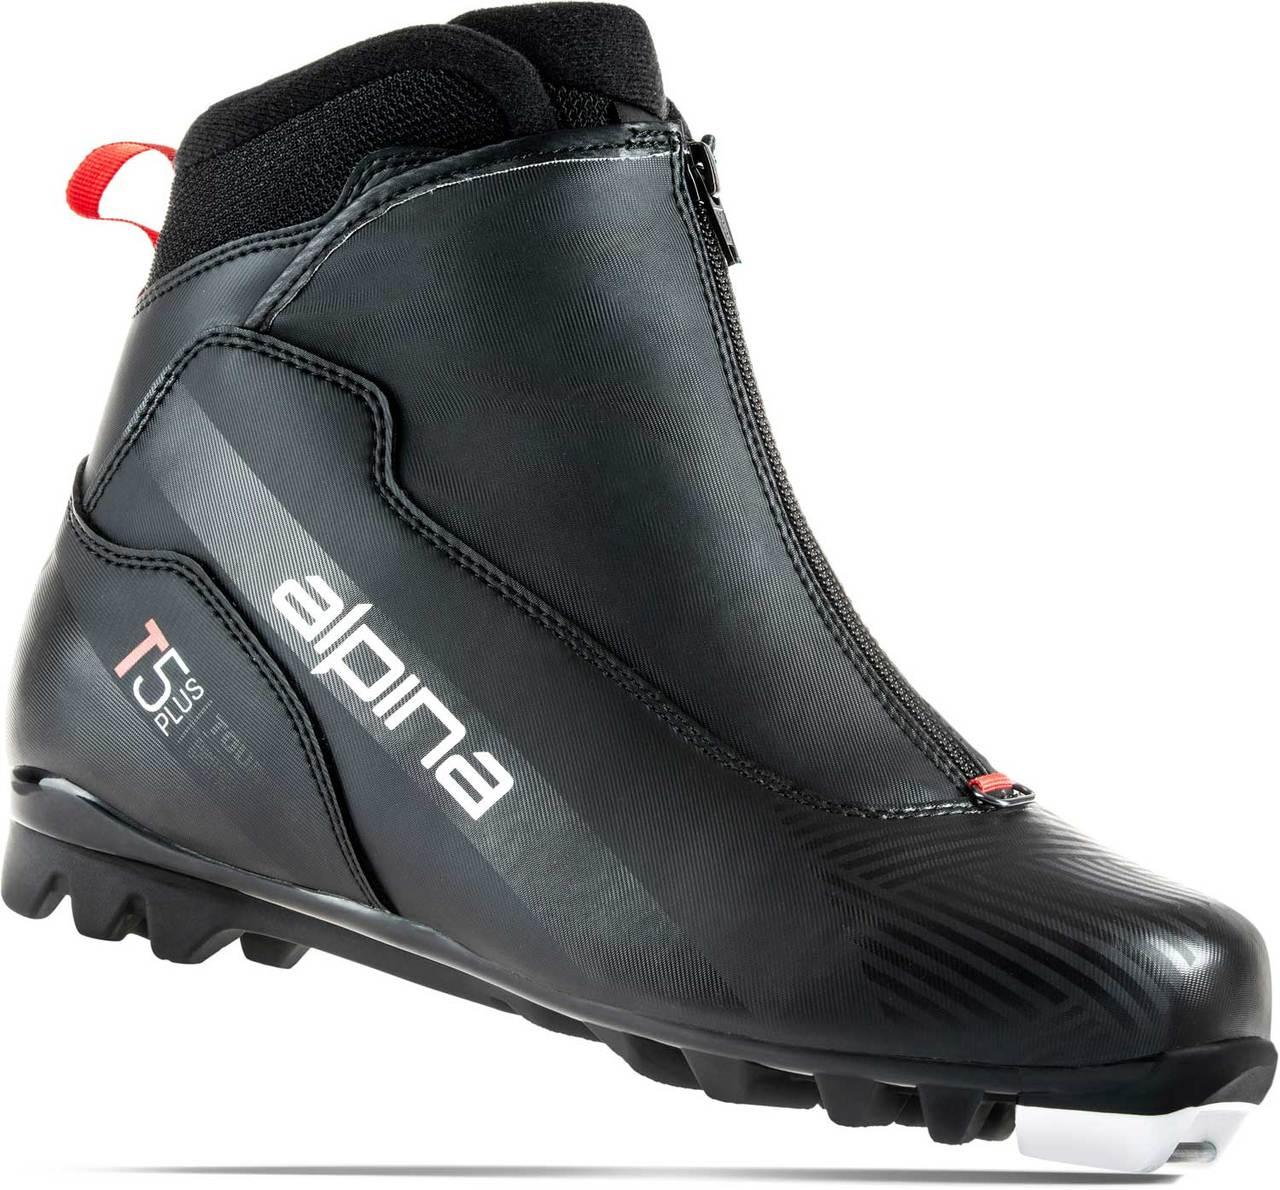 BĚŽECKÉ BOTY Alpina T5 PLUS - black/red 2022/2023